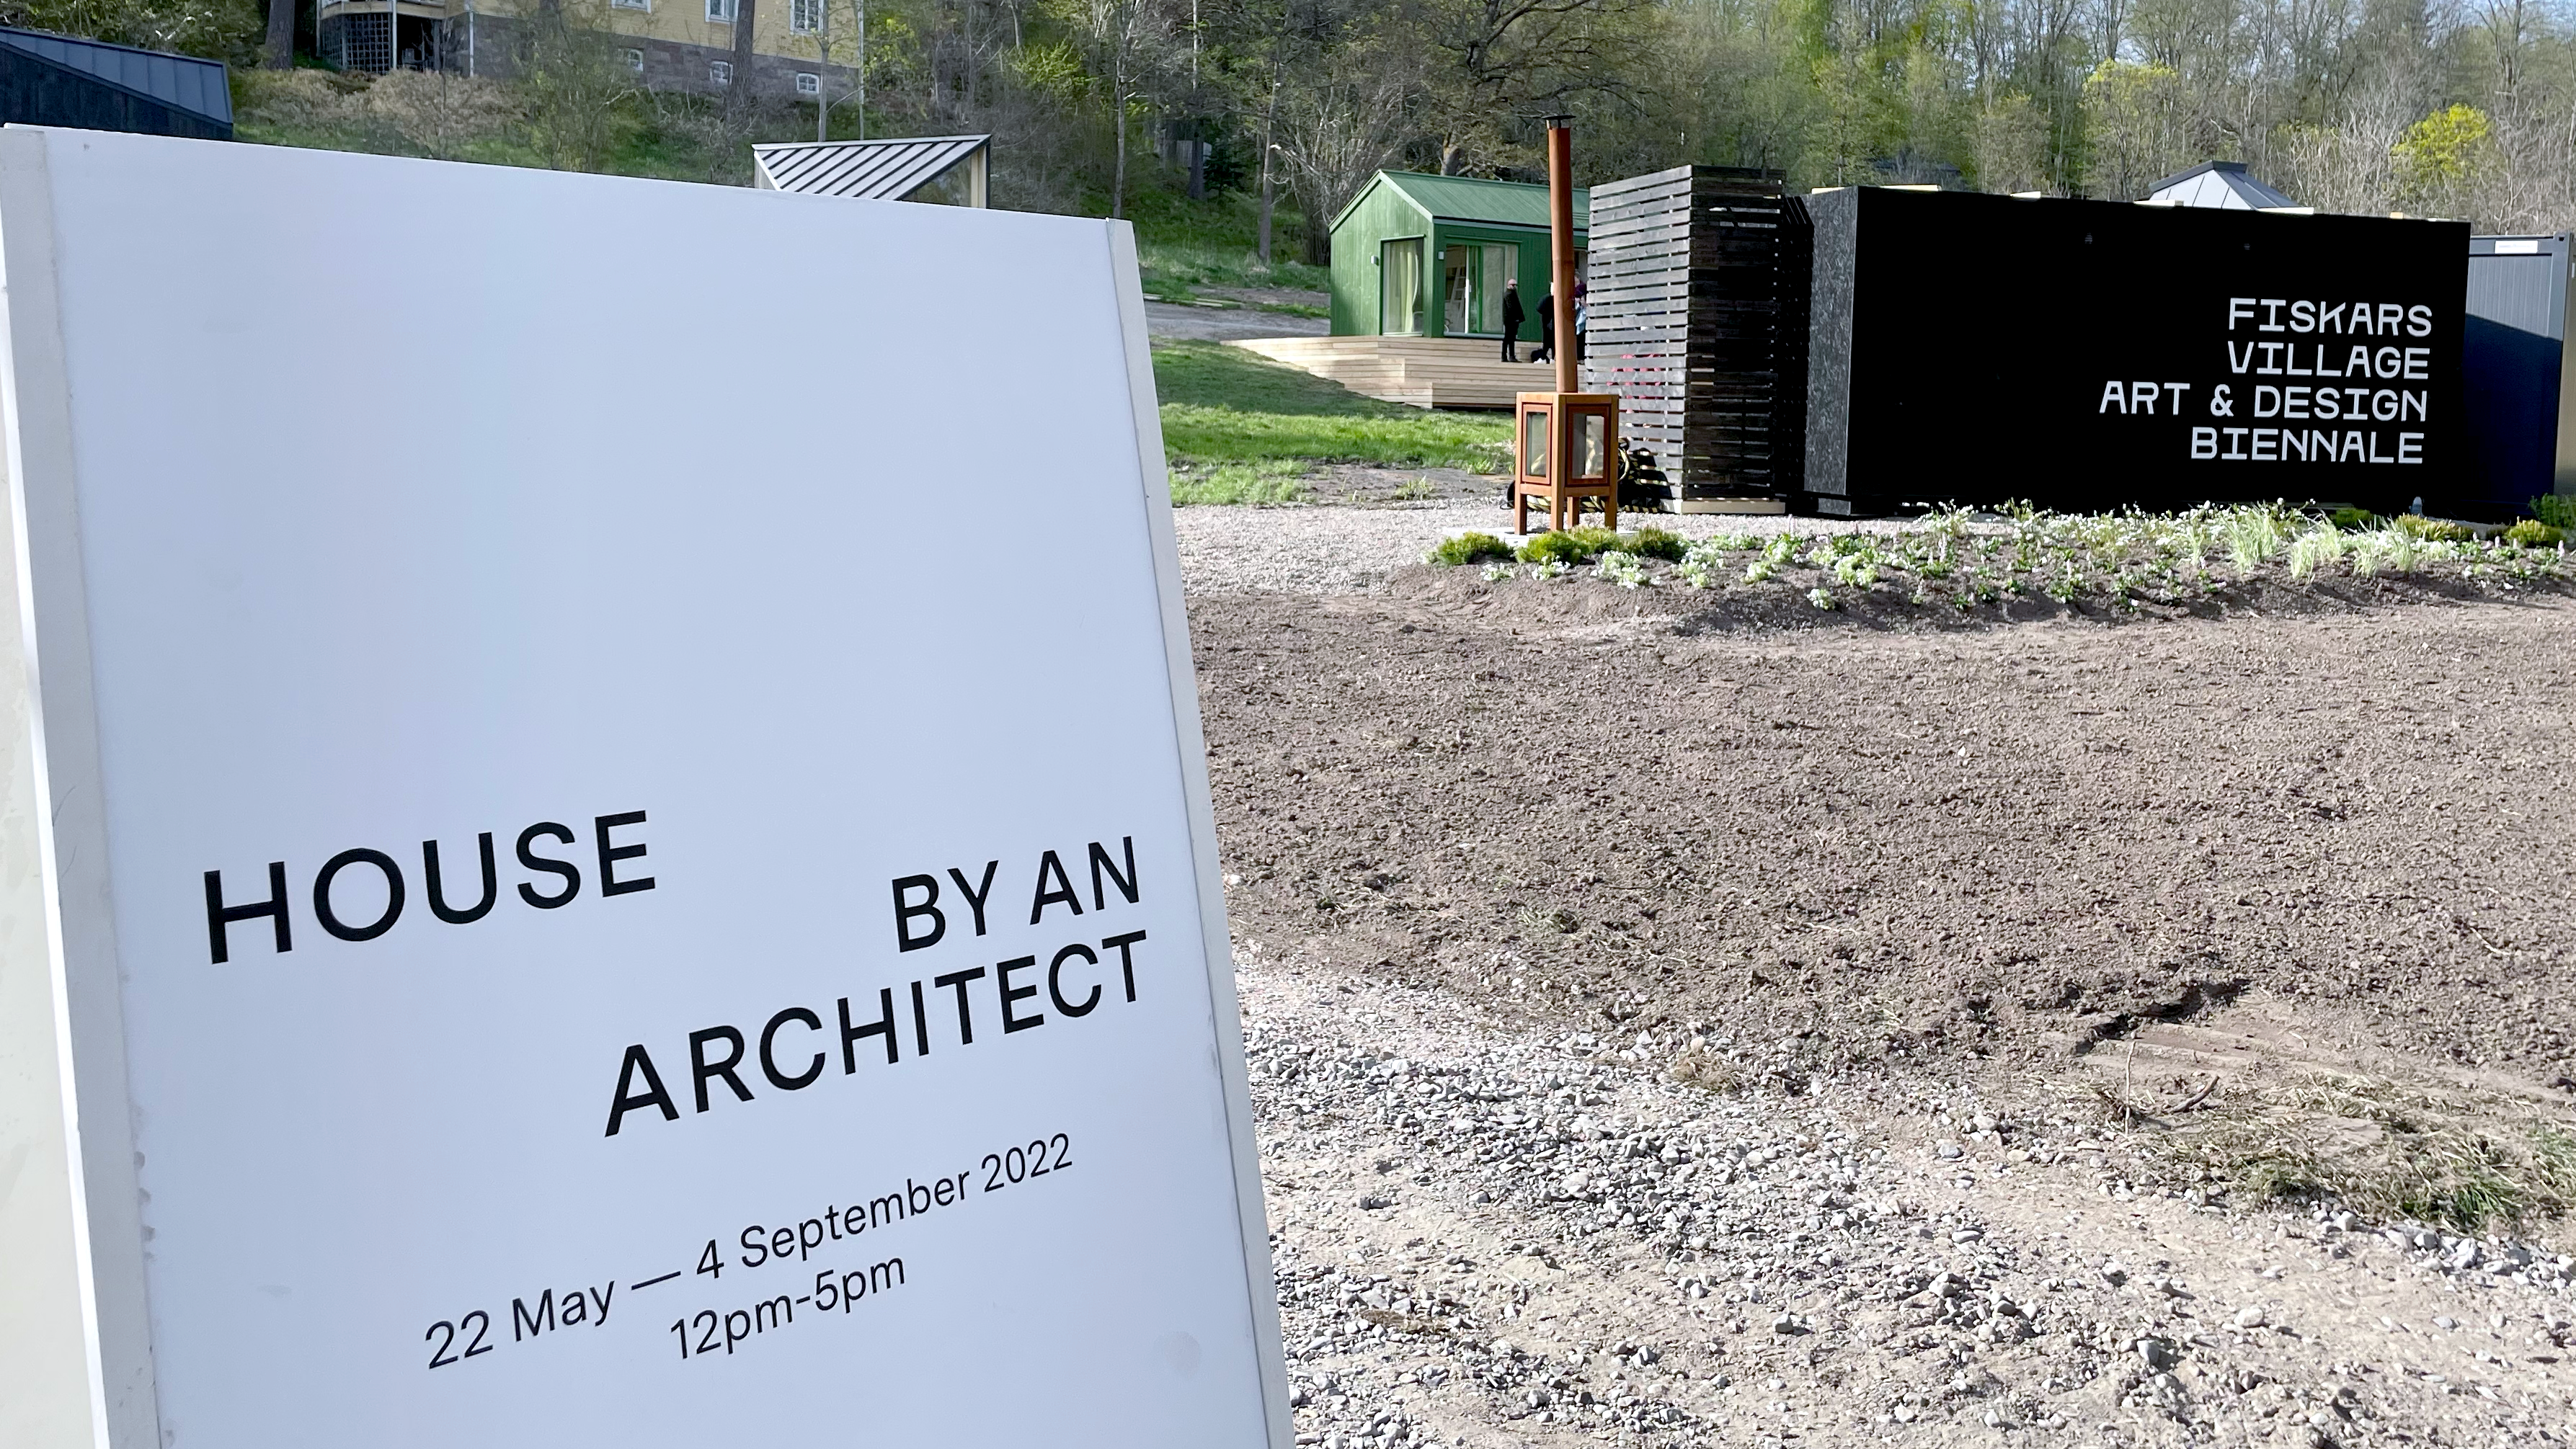 House by an architect pågår mellan 22 maj till 4 september.